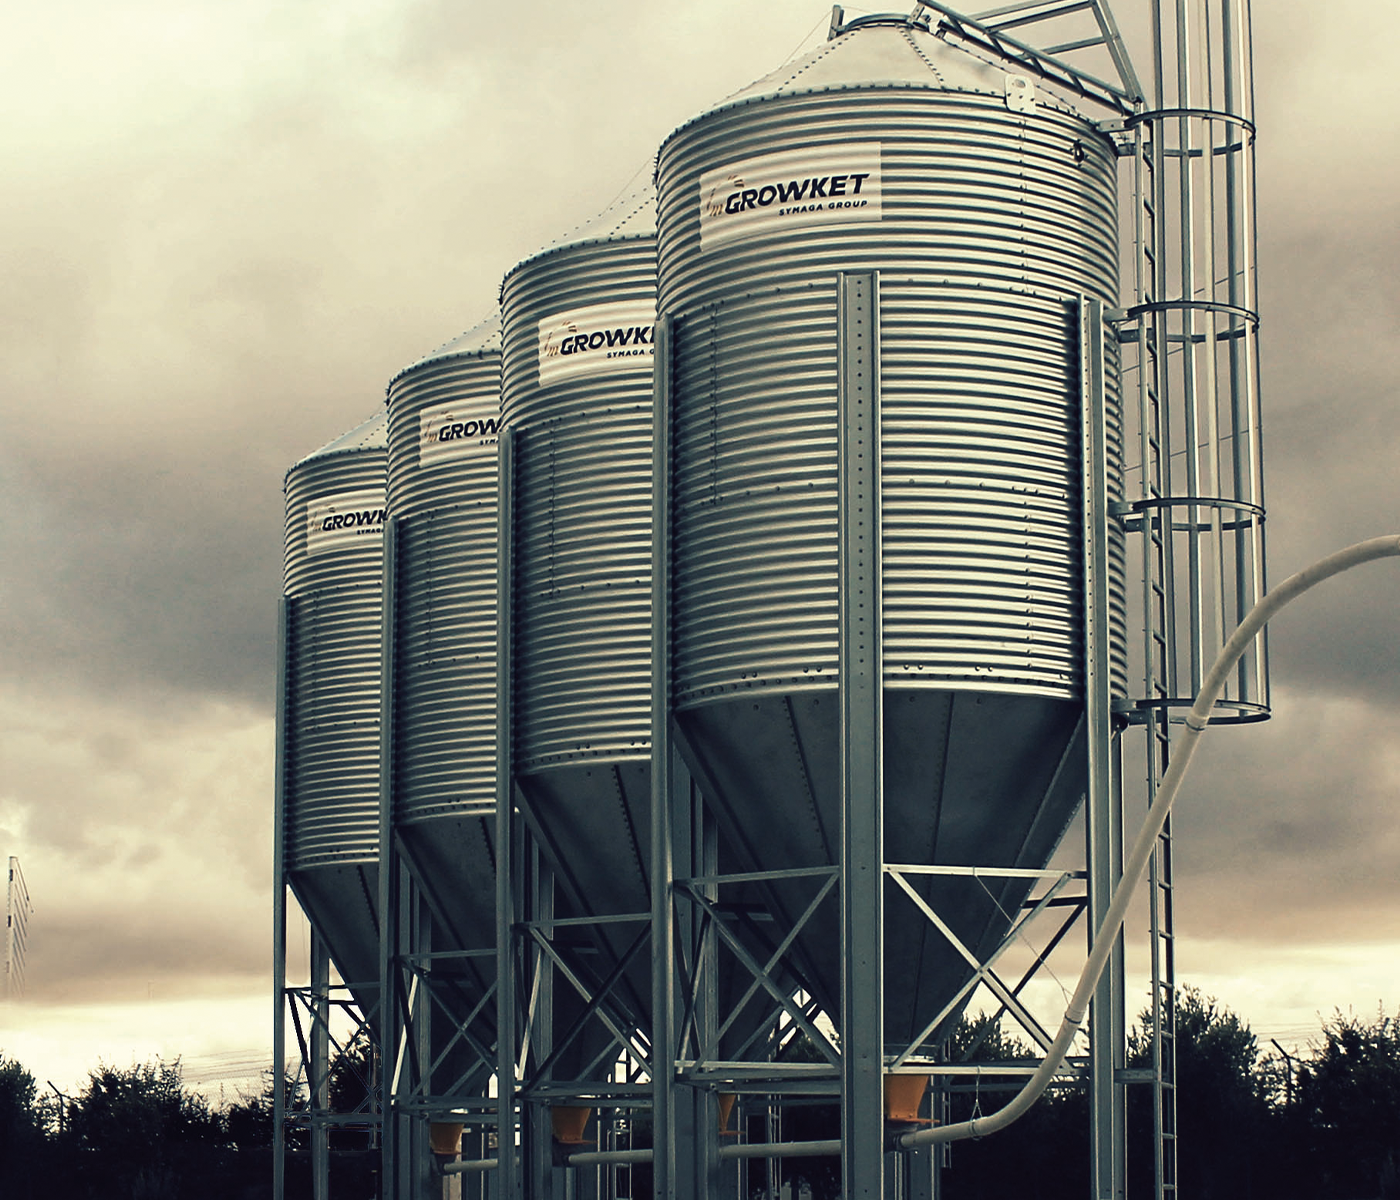 Nueva visión Growket: Ser referente en silos granja y sistema de distribución de pienso